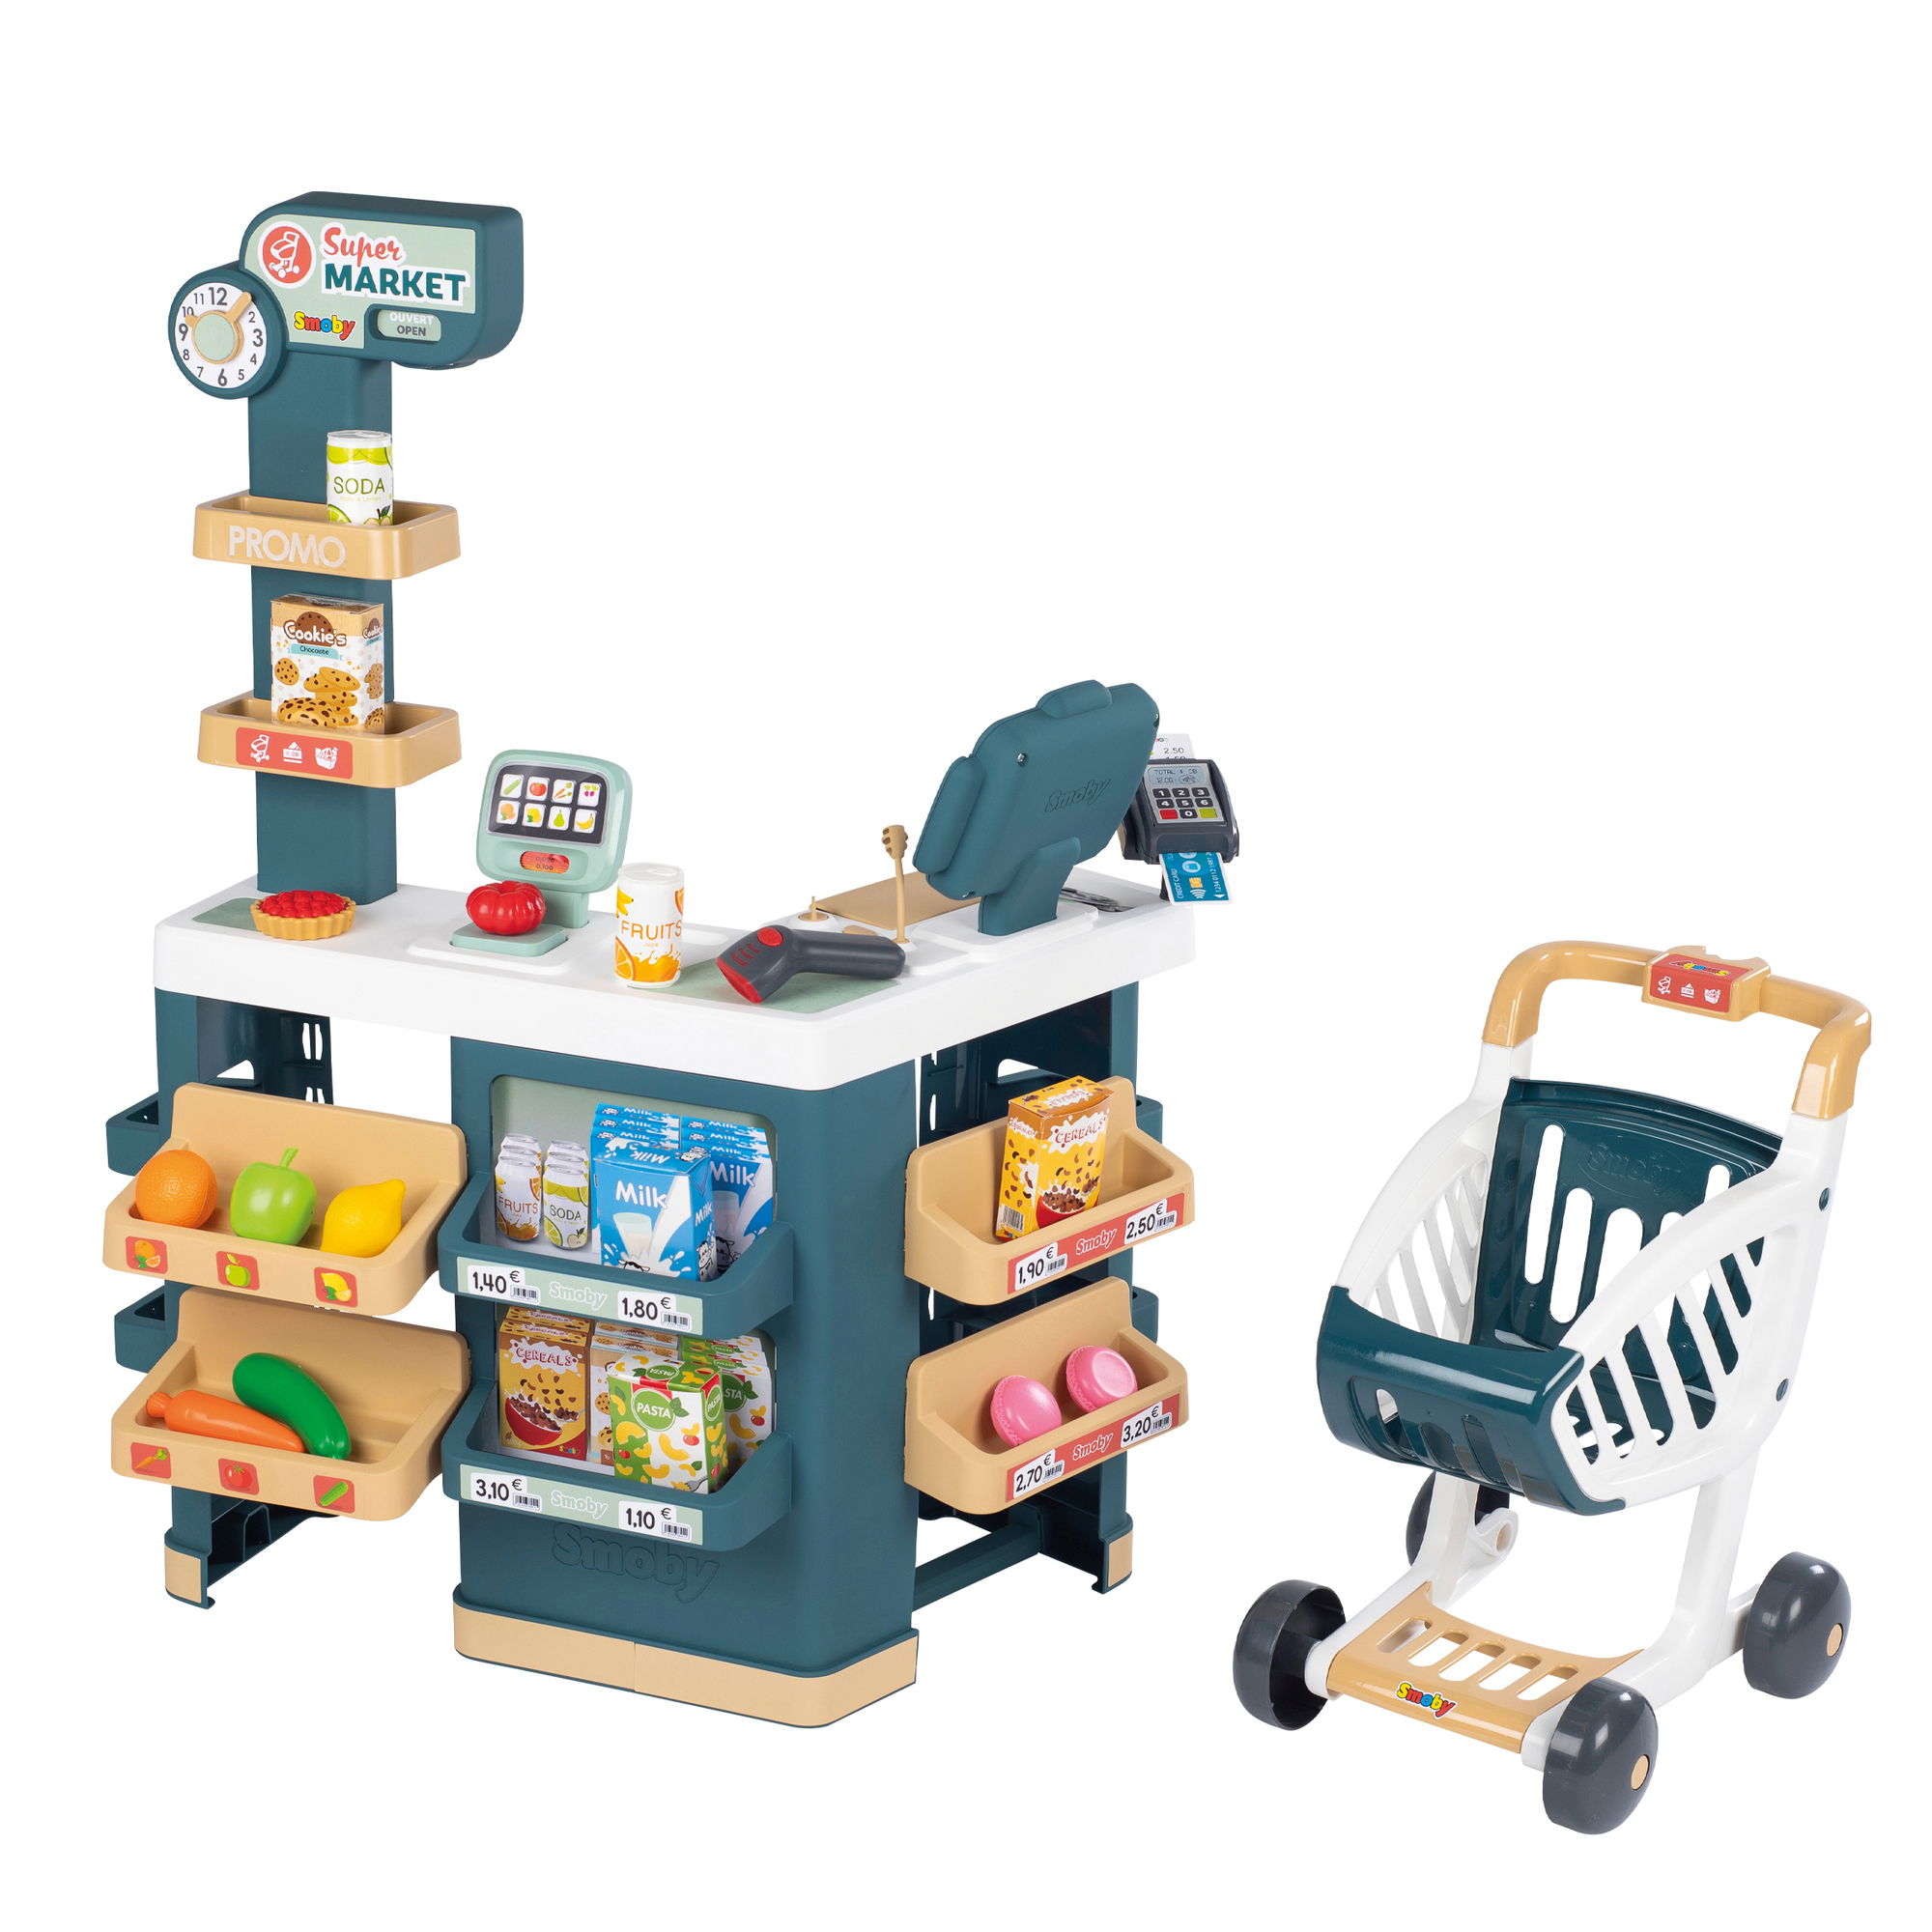 SMOBY Supermarkt mit Mehrfarbig Spielzeug Einkaufswagen